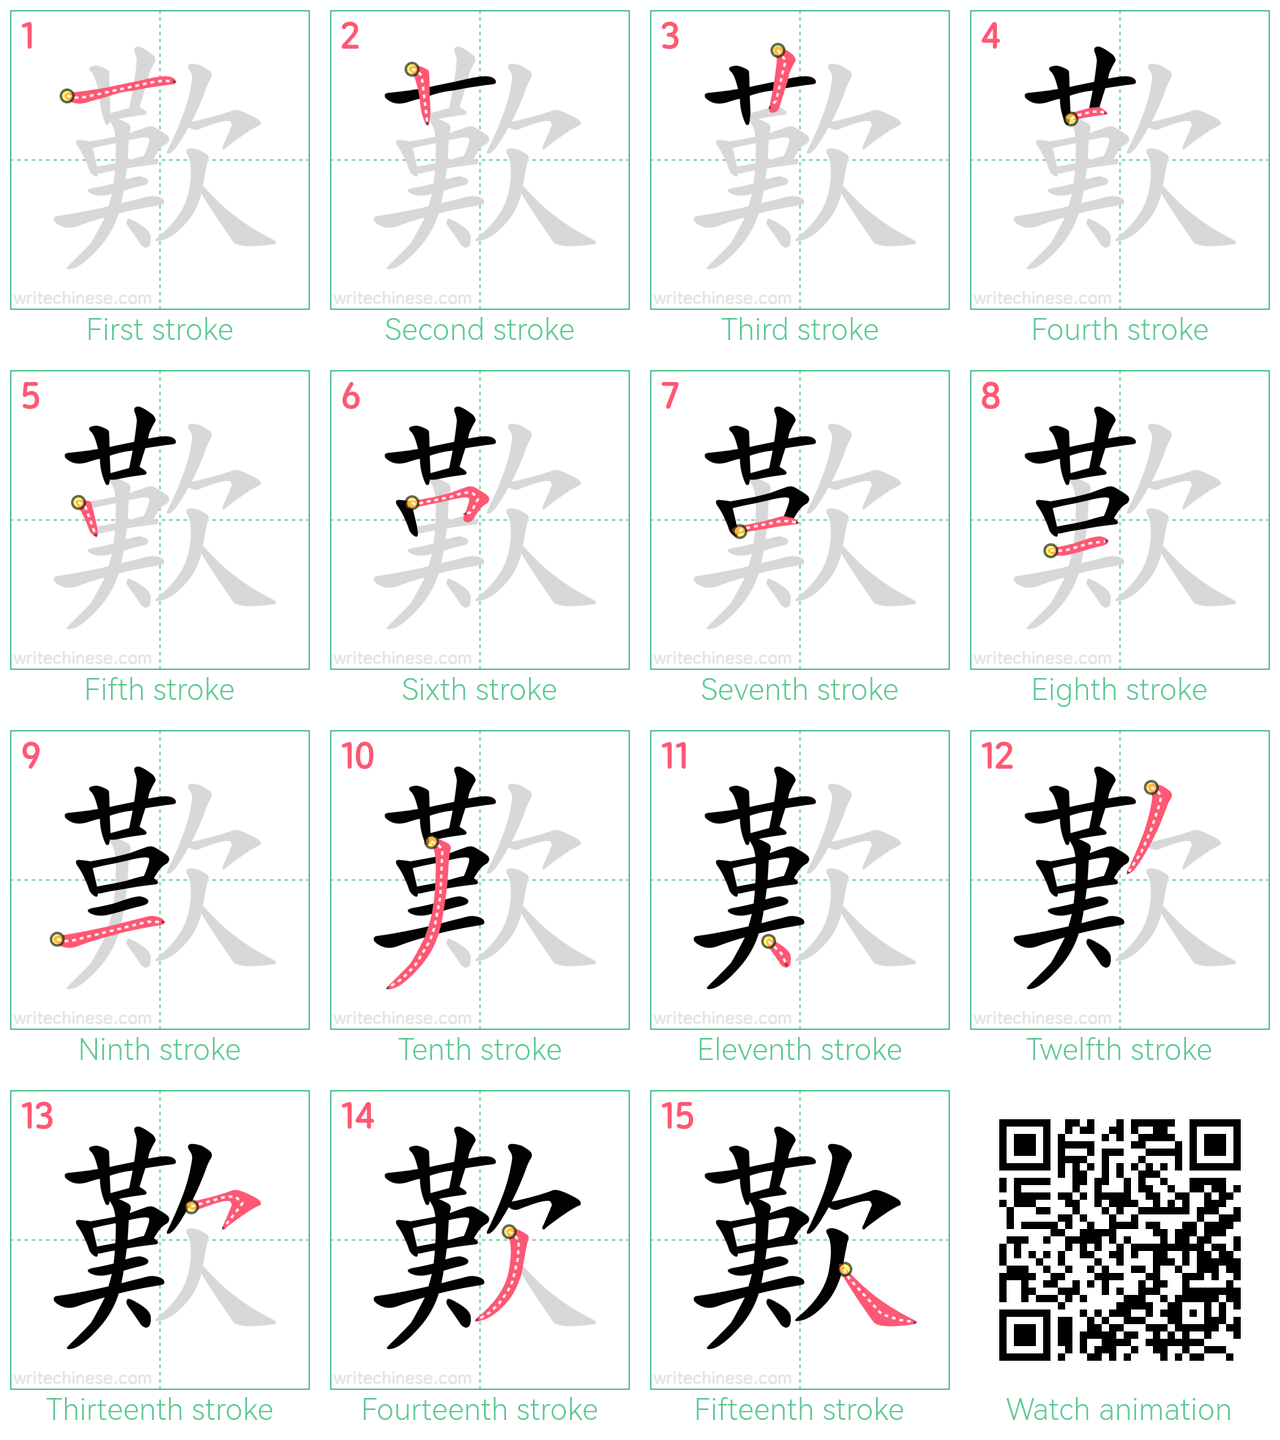 歎 step-by-step stroke order diagrams